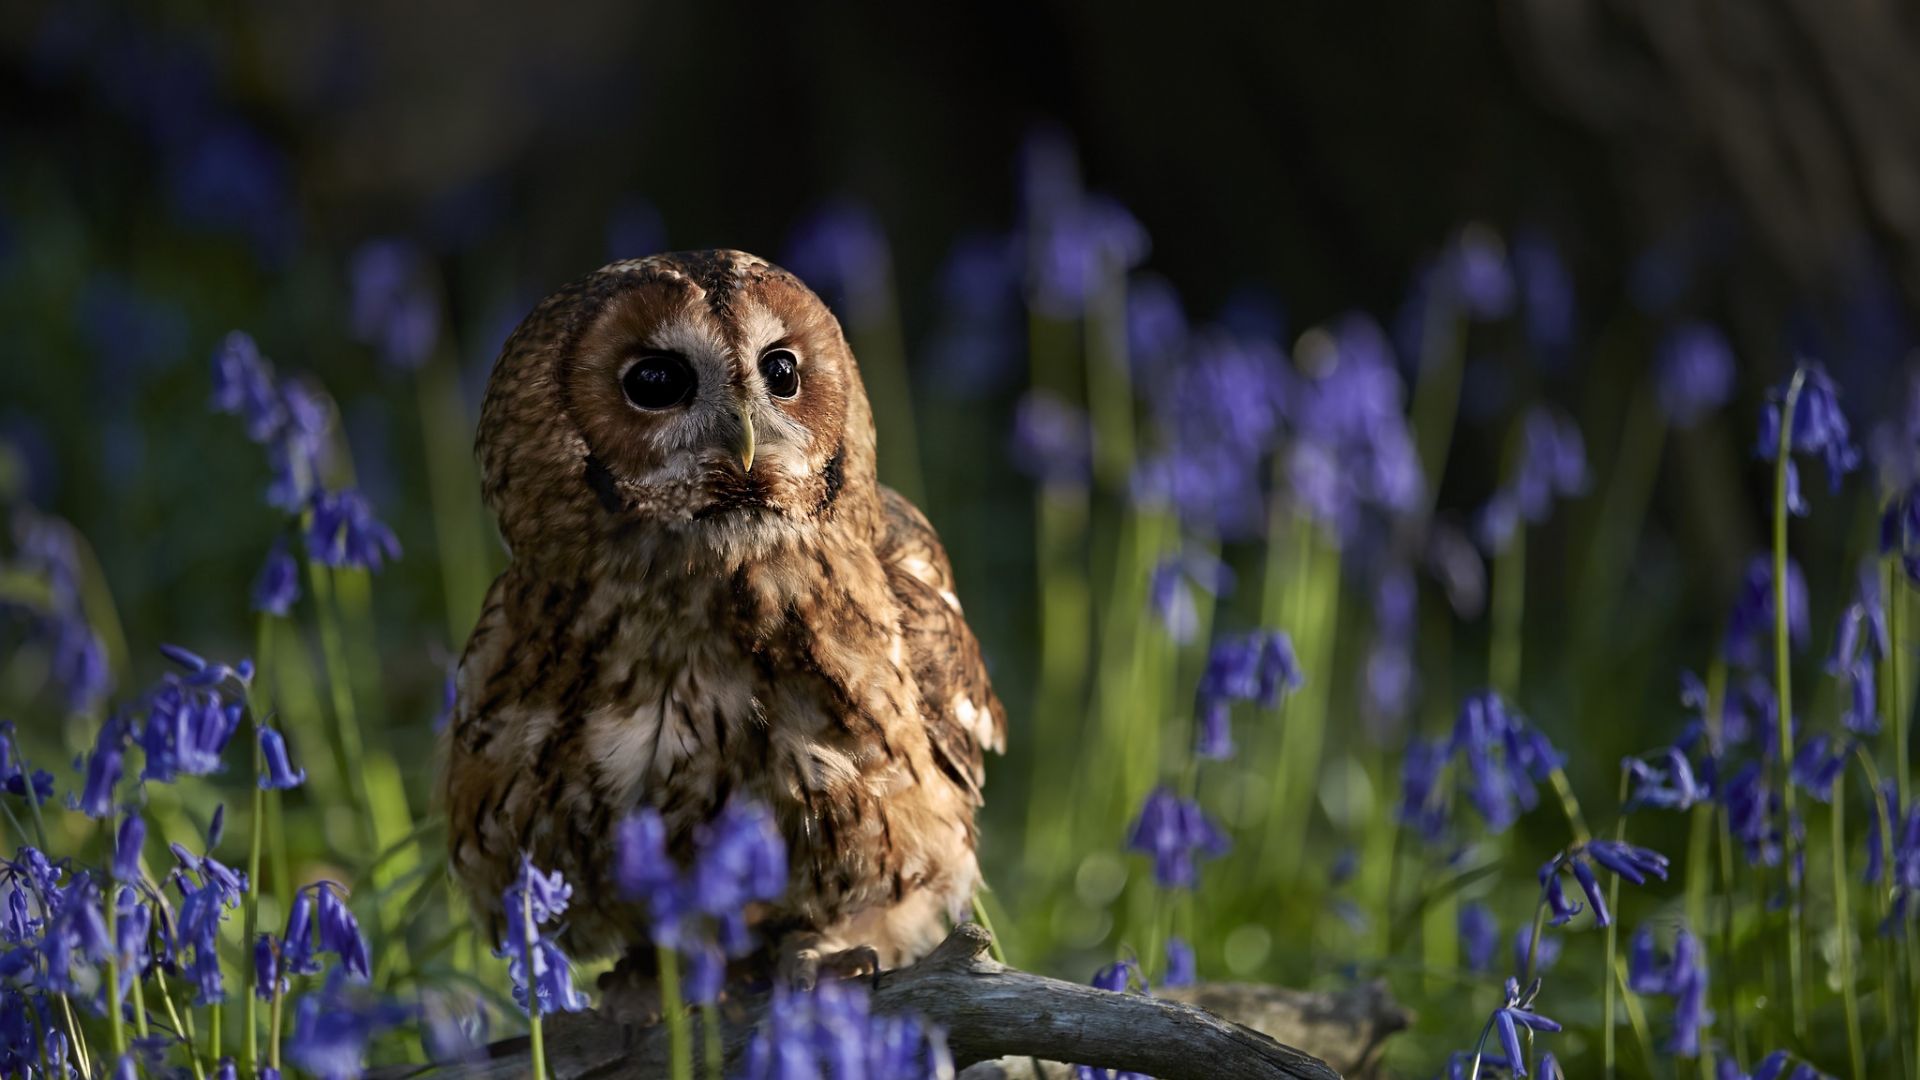 Wallpaper Cute owl, bird, flowers, plants